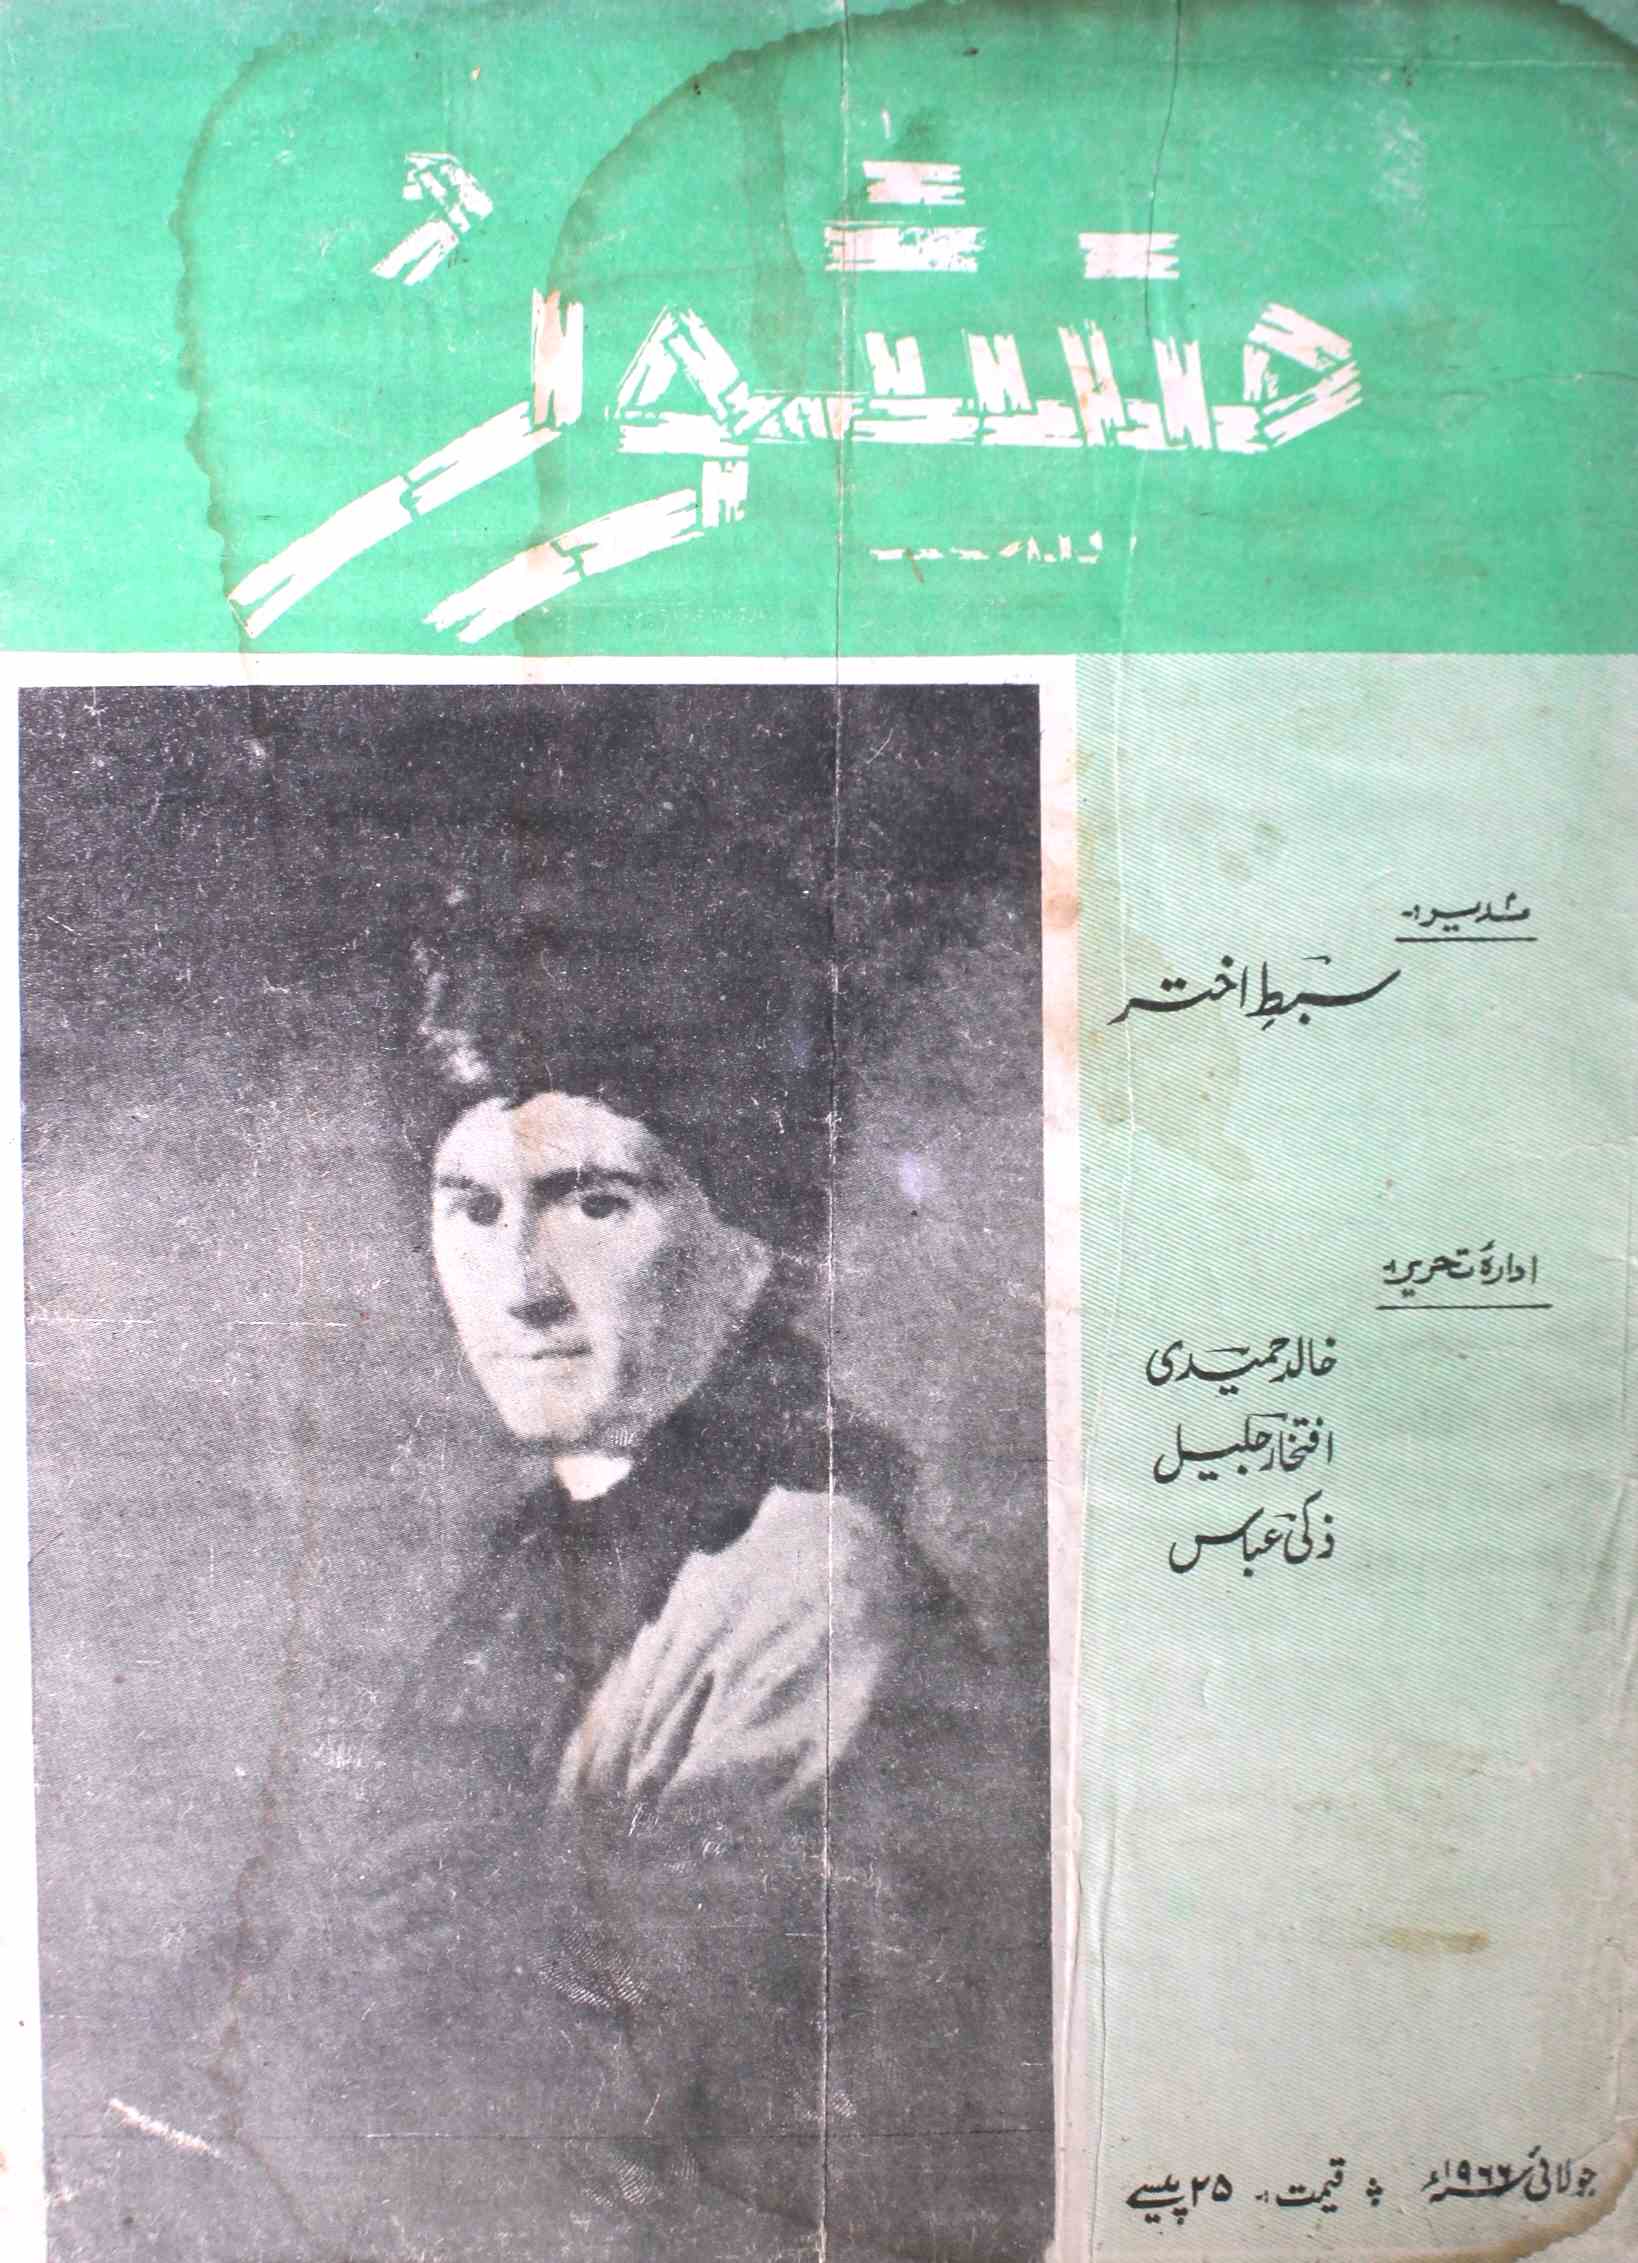 Manshoor Jild.3 No.7 July 1966-SVK